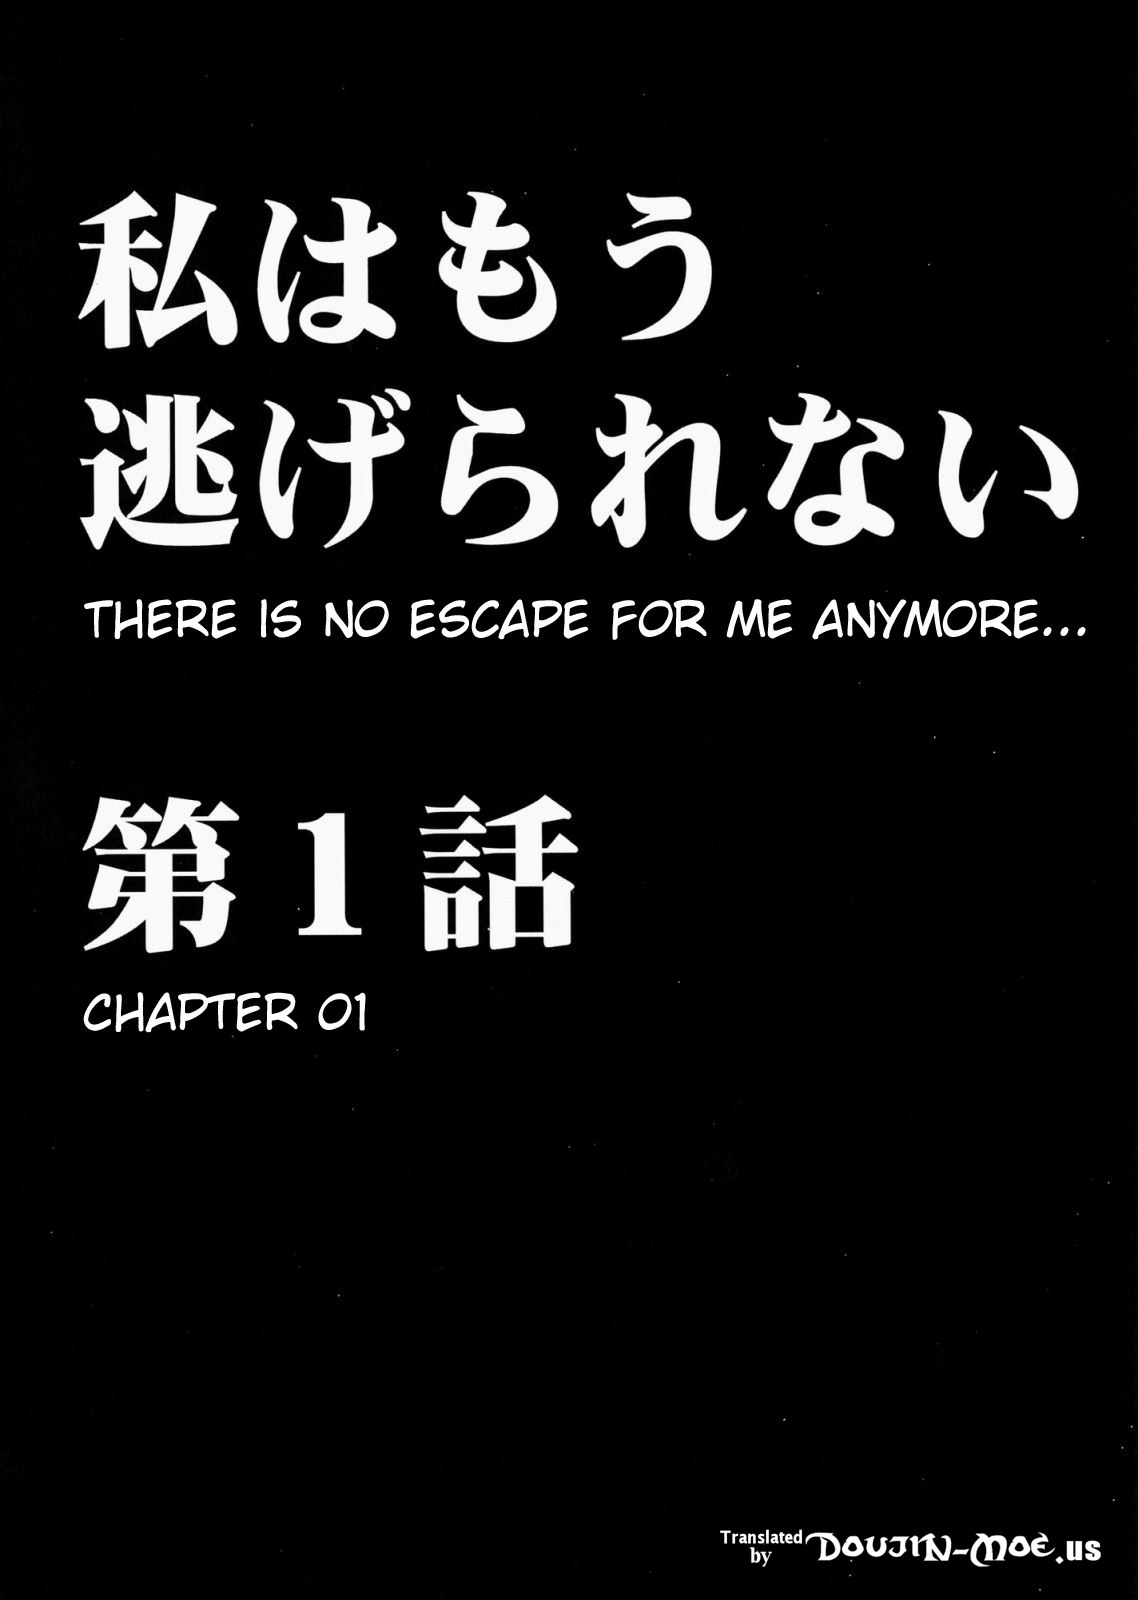 [Crimson Comics] Watashi wa mou Nigerrarenai (Final Fantasy XIII) [ENGLISH] 「私もう逃げられない」